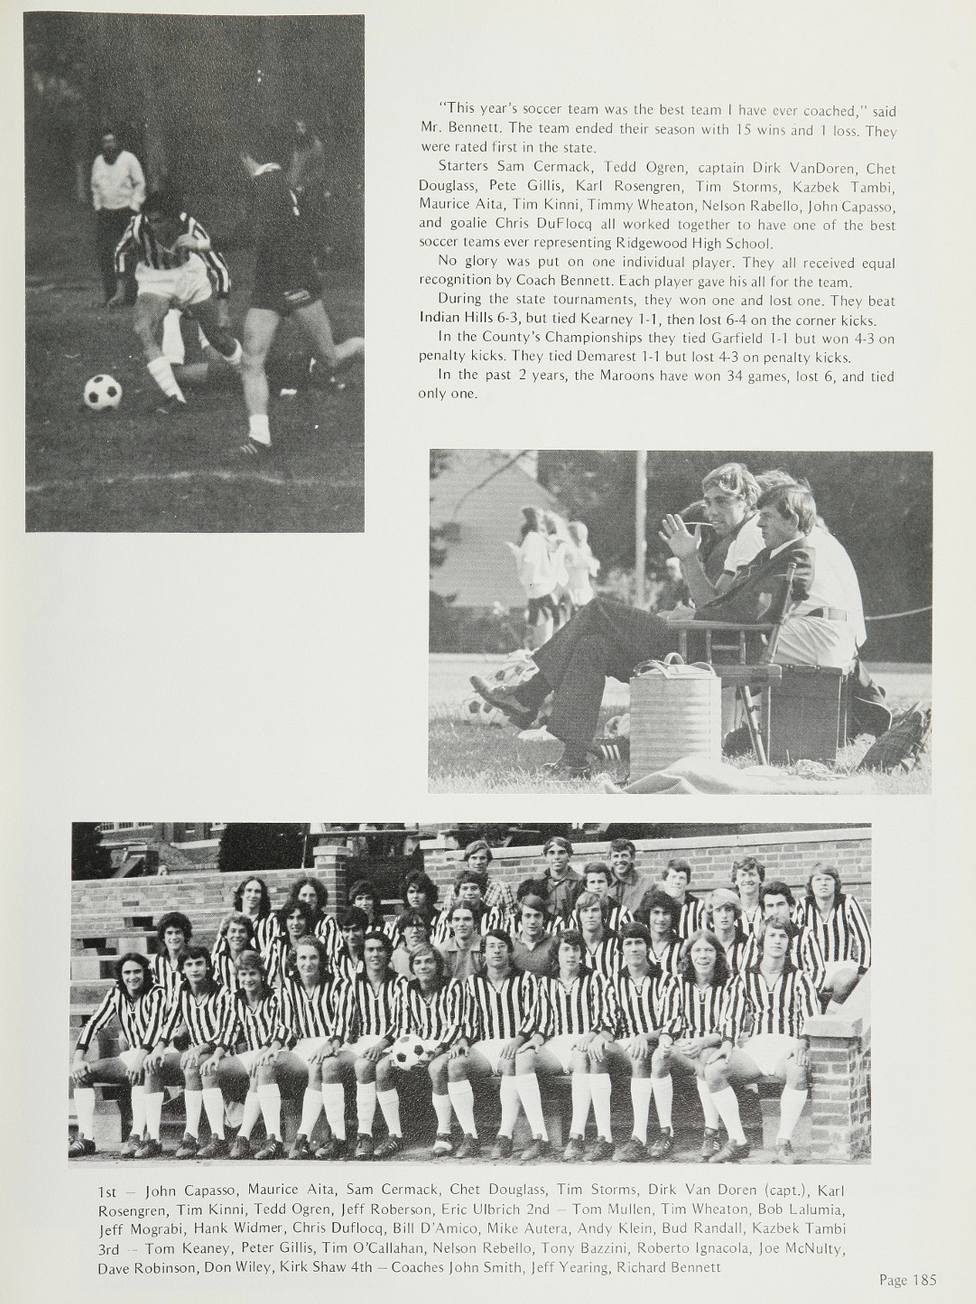 1976 Boys’ Soccer Team